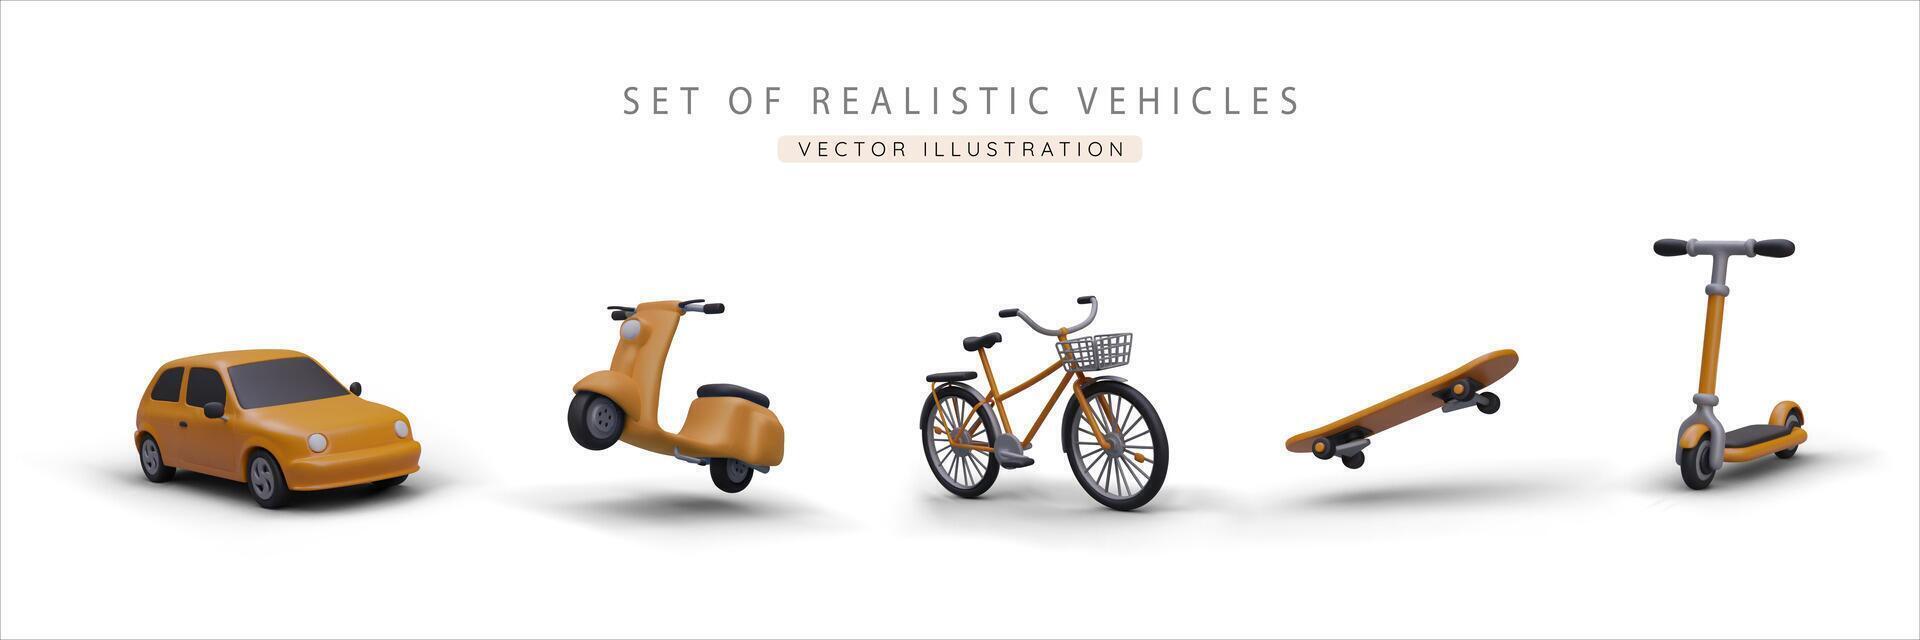 uppsättning av realistisk 3d gul bil, skoter, cykel, skateboard och sparka skoter vektor